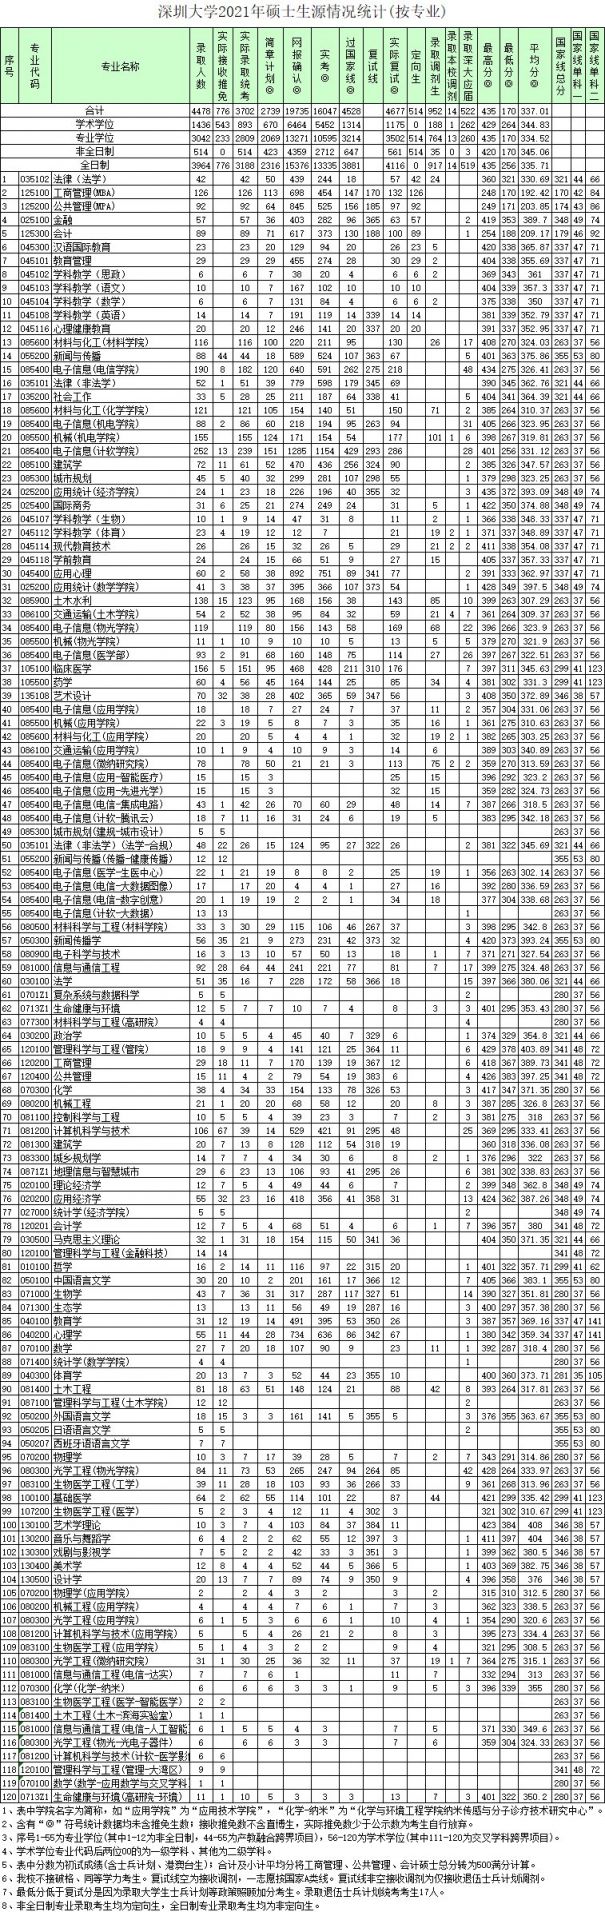 深圳大学2021年硕士研究生各专业录取分数线统计表